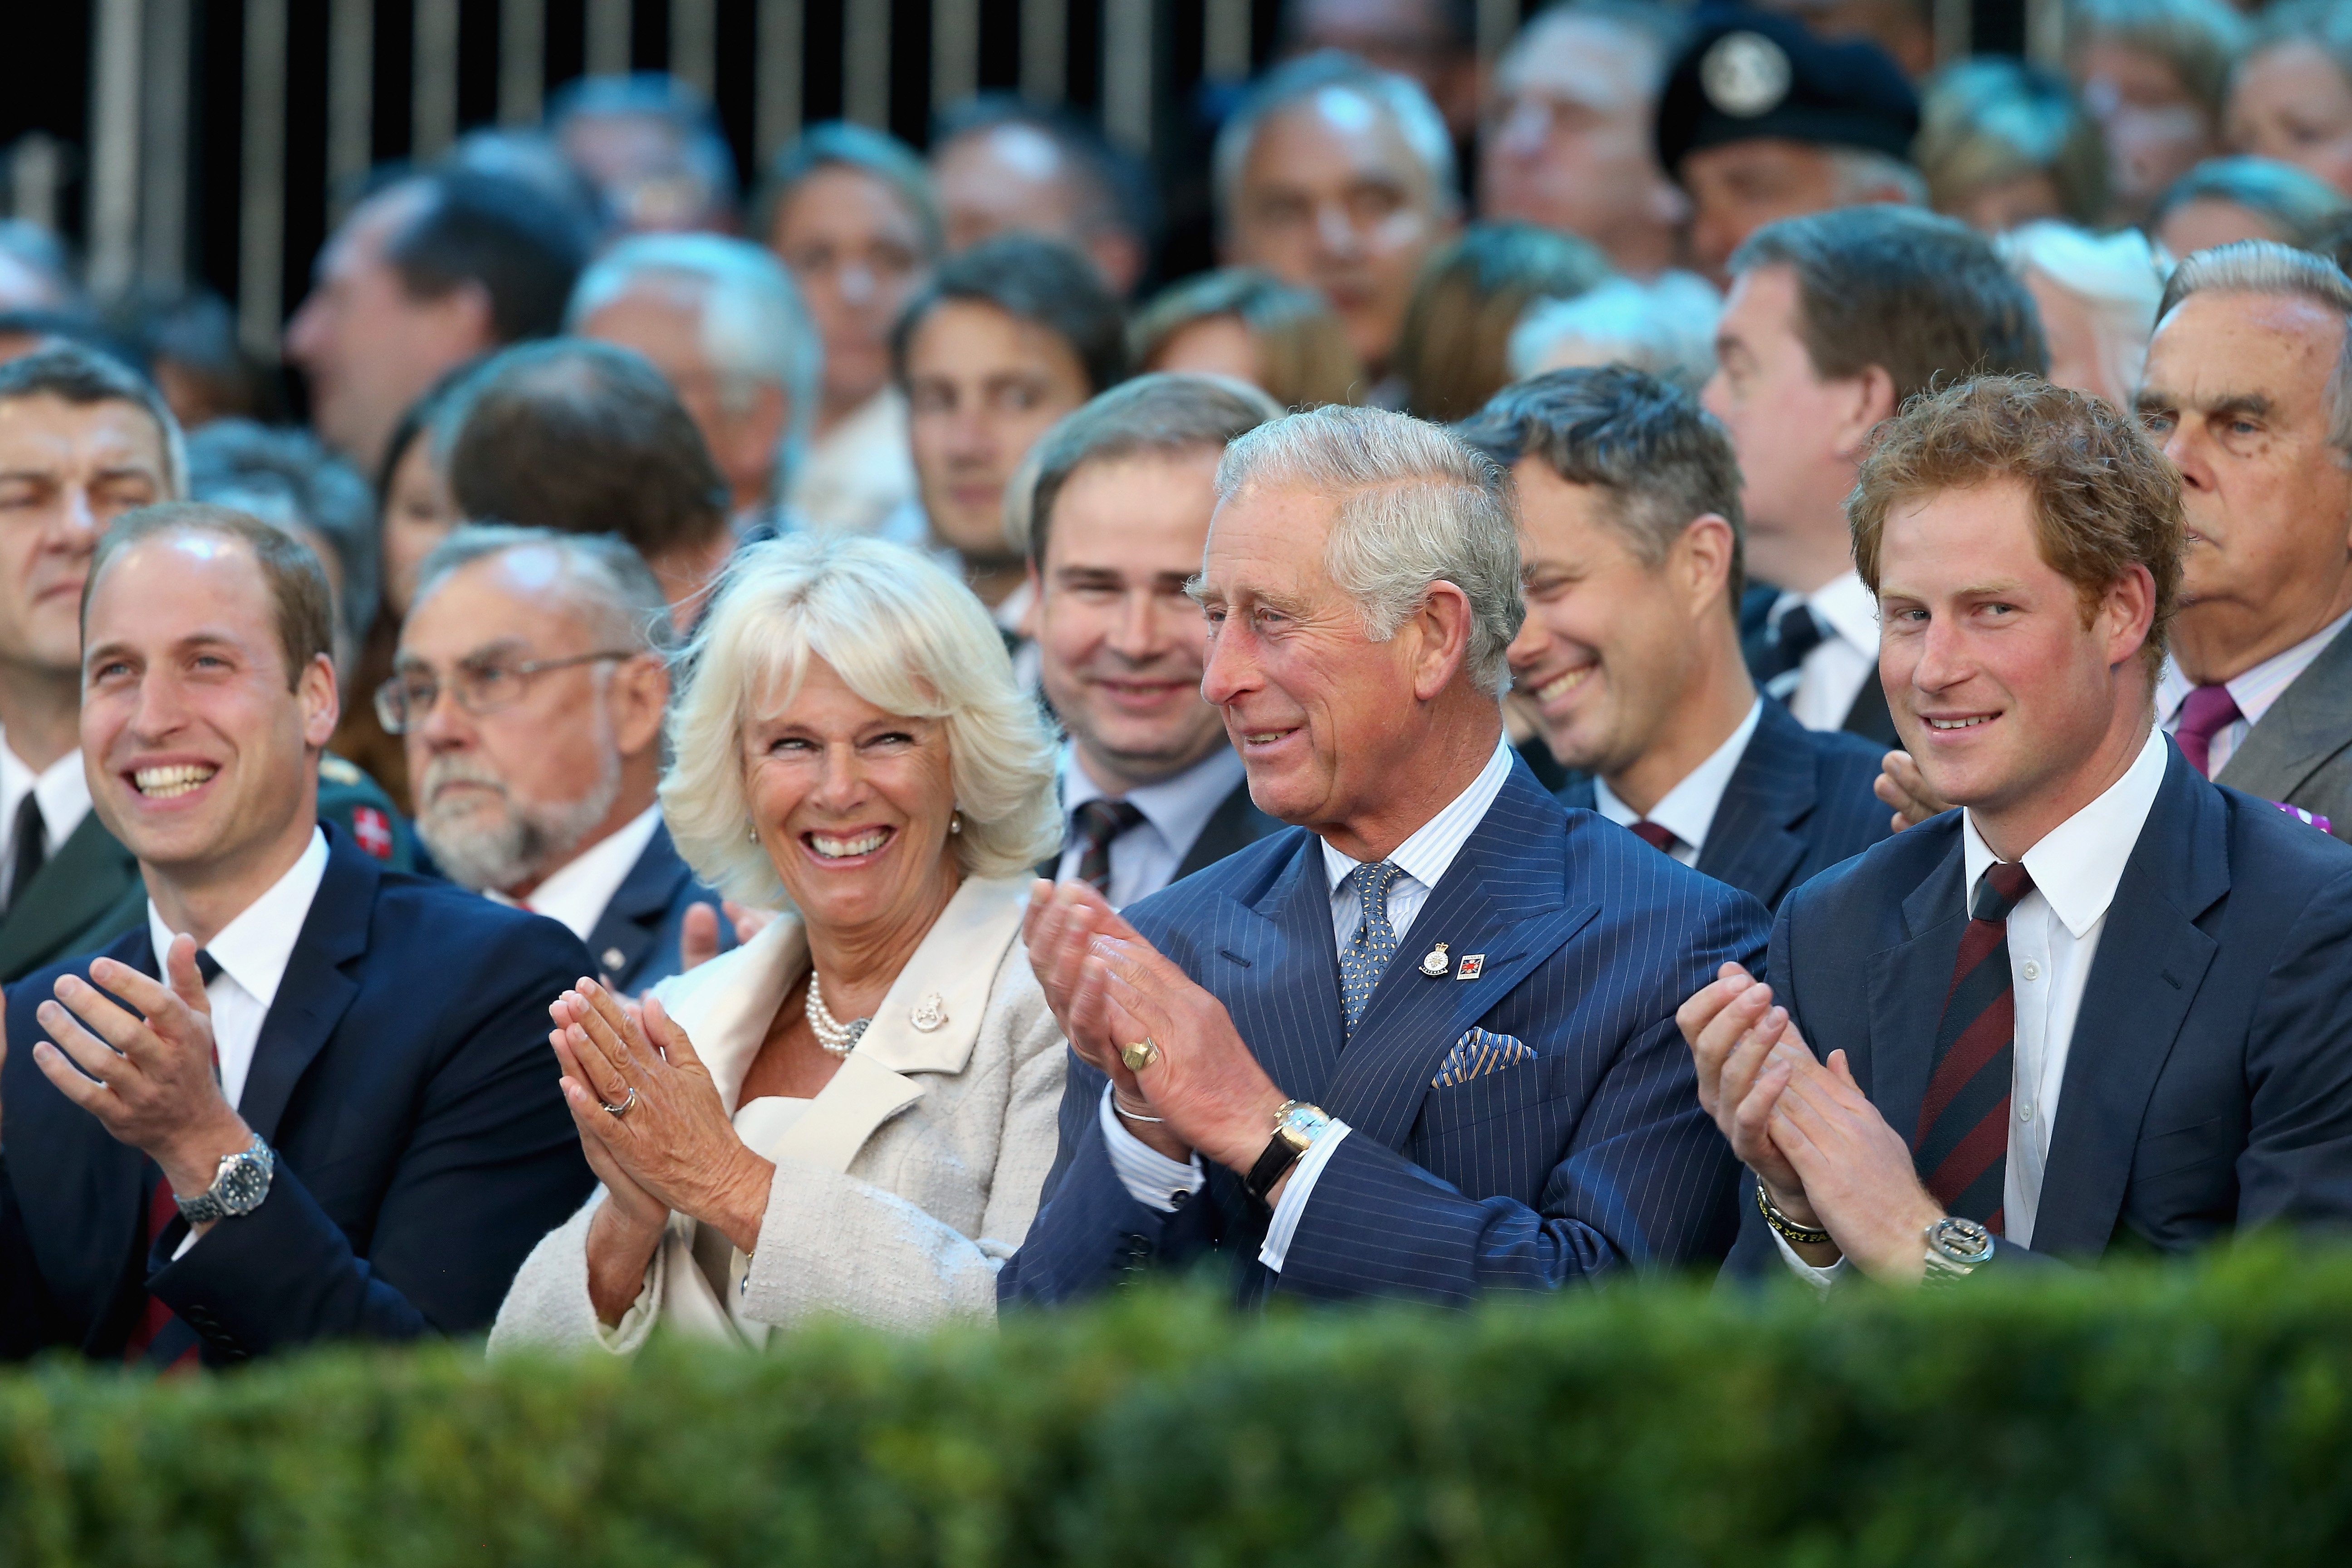 Königingemahlin Camilla, König Charles III., Prinz Harry und Prinz William in London 2014. | Quelle: Getty Images